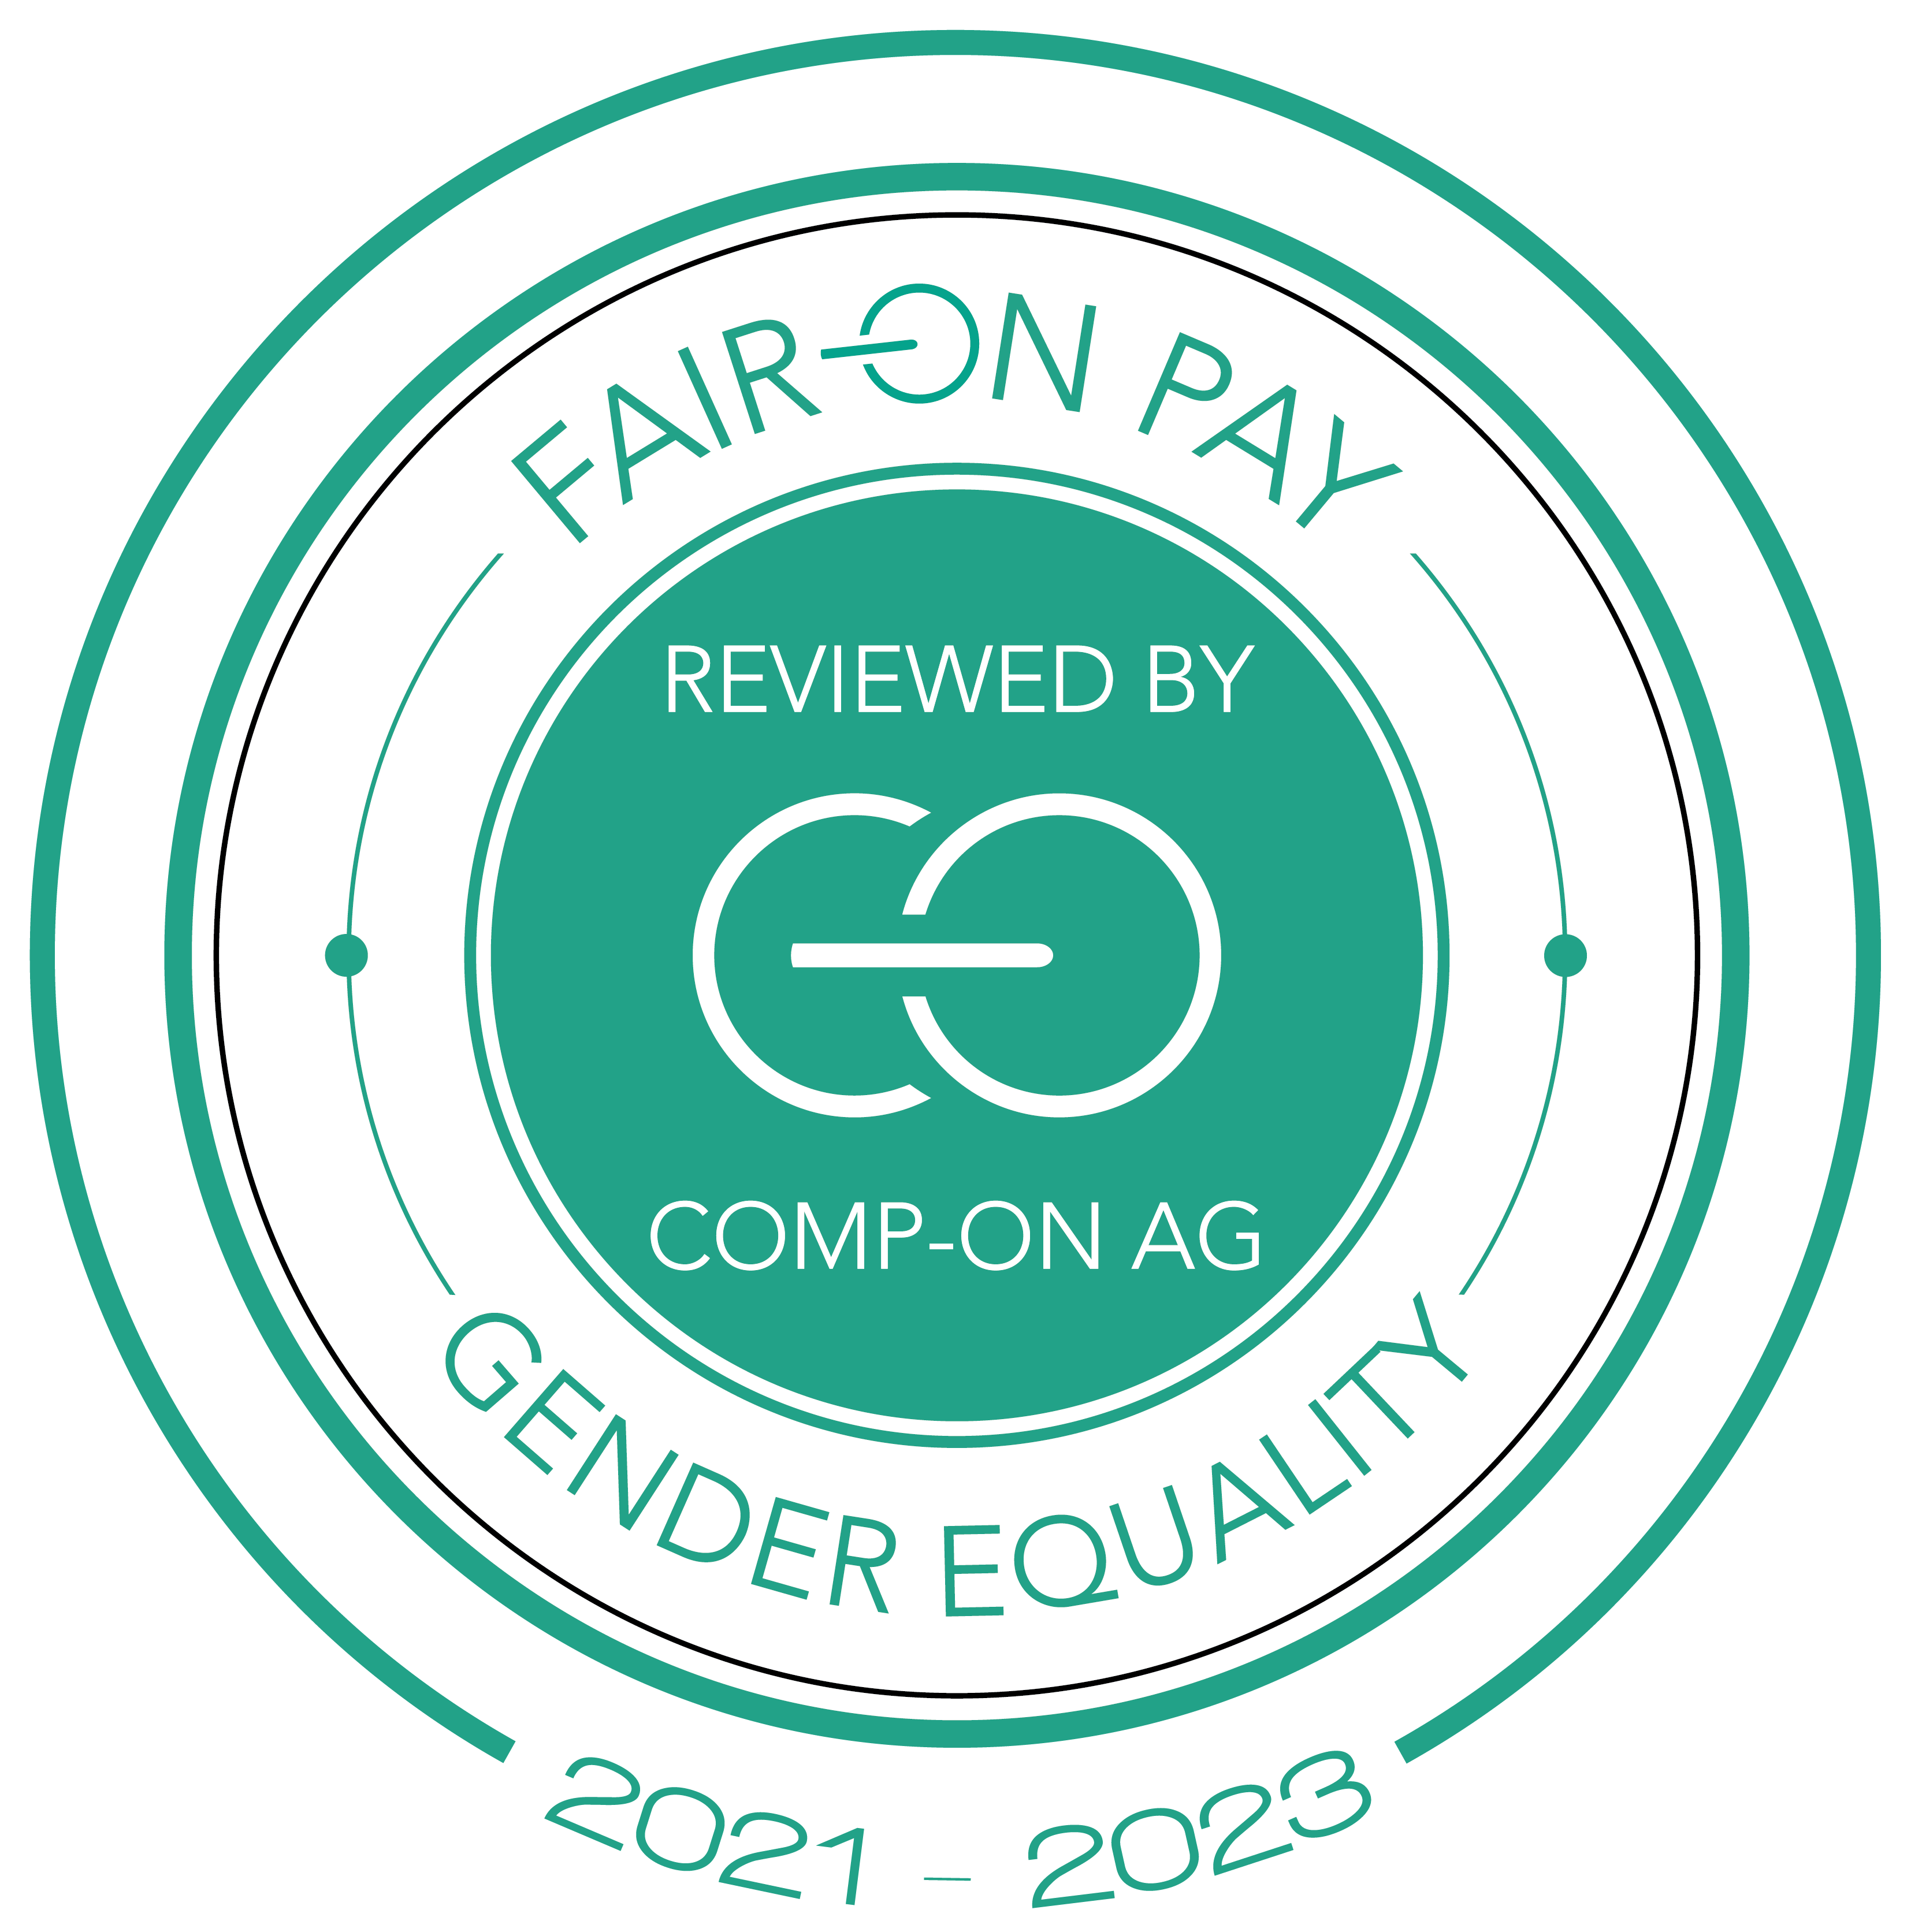 SGS Zertifikat Fair On Pay